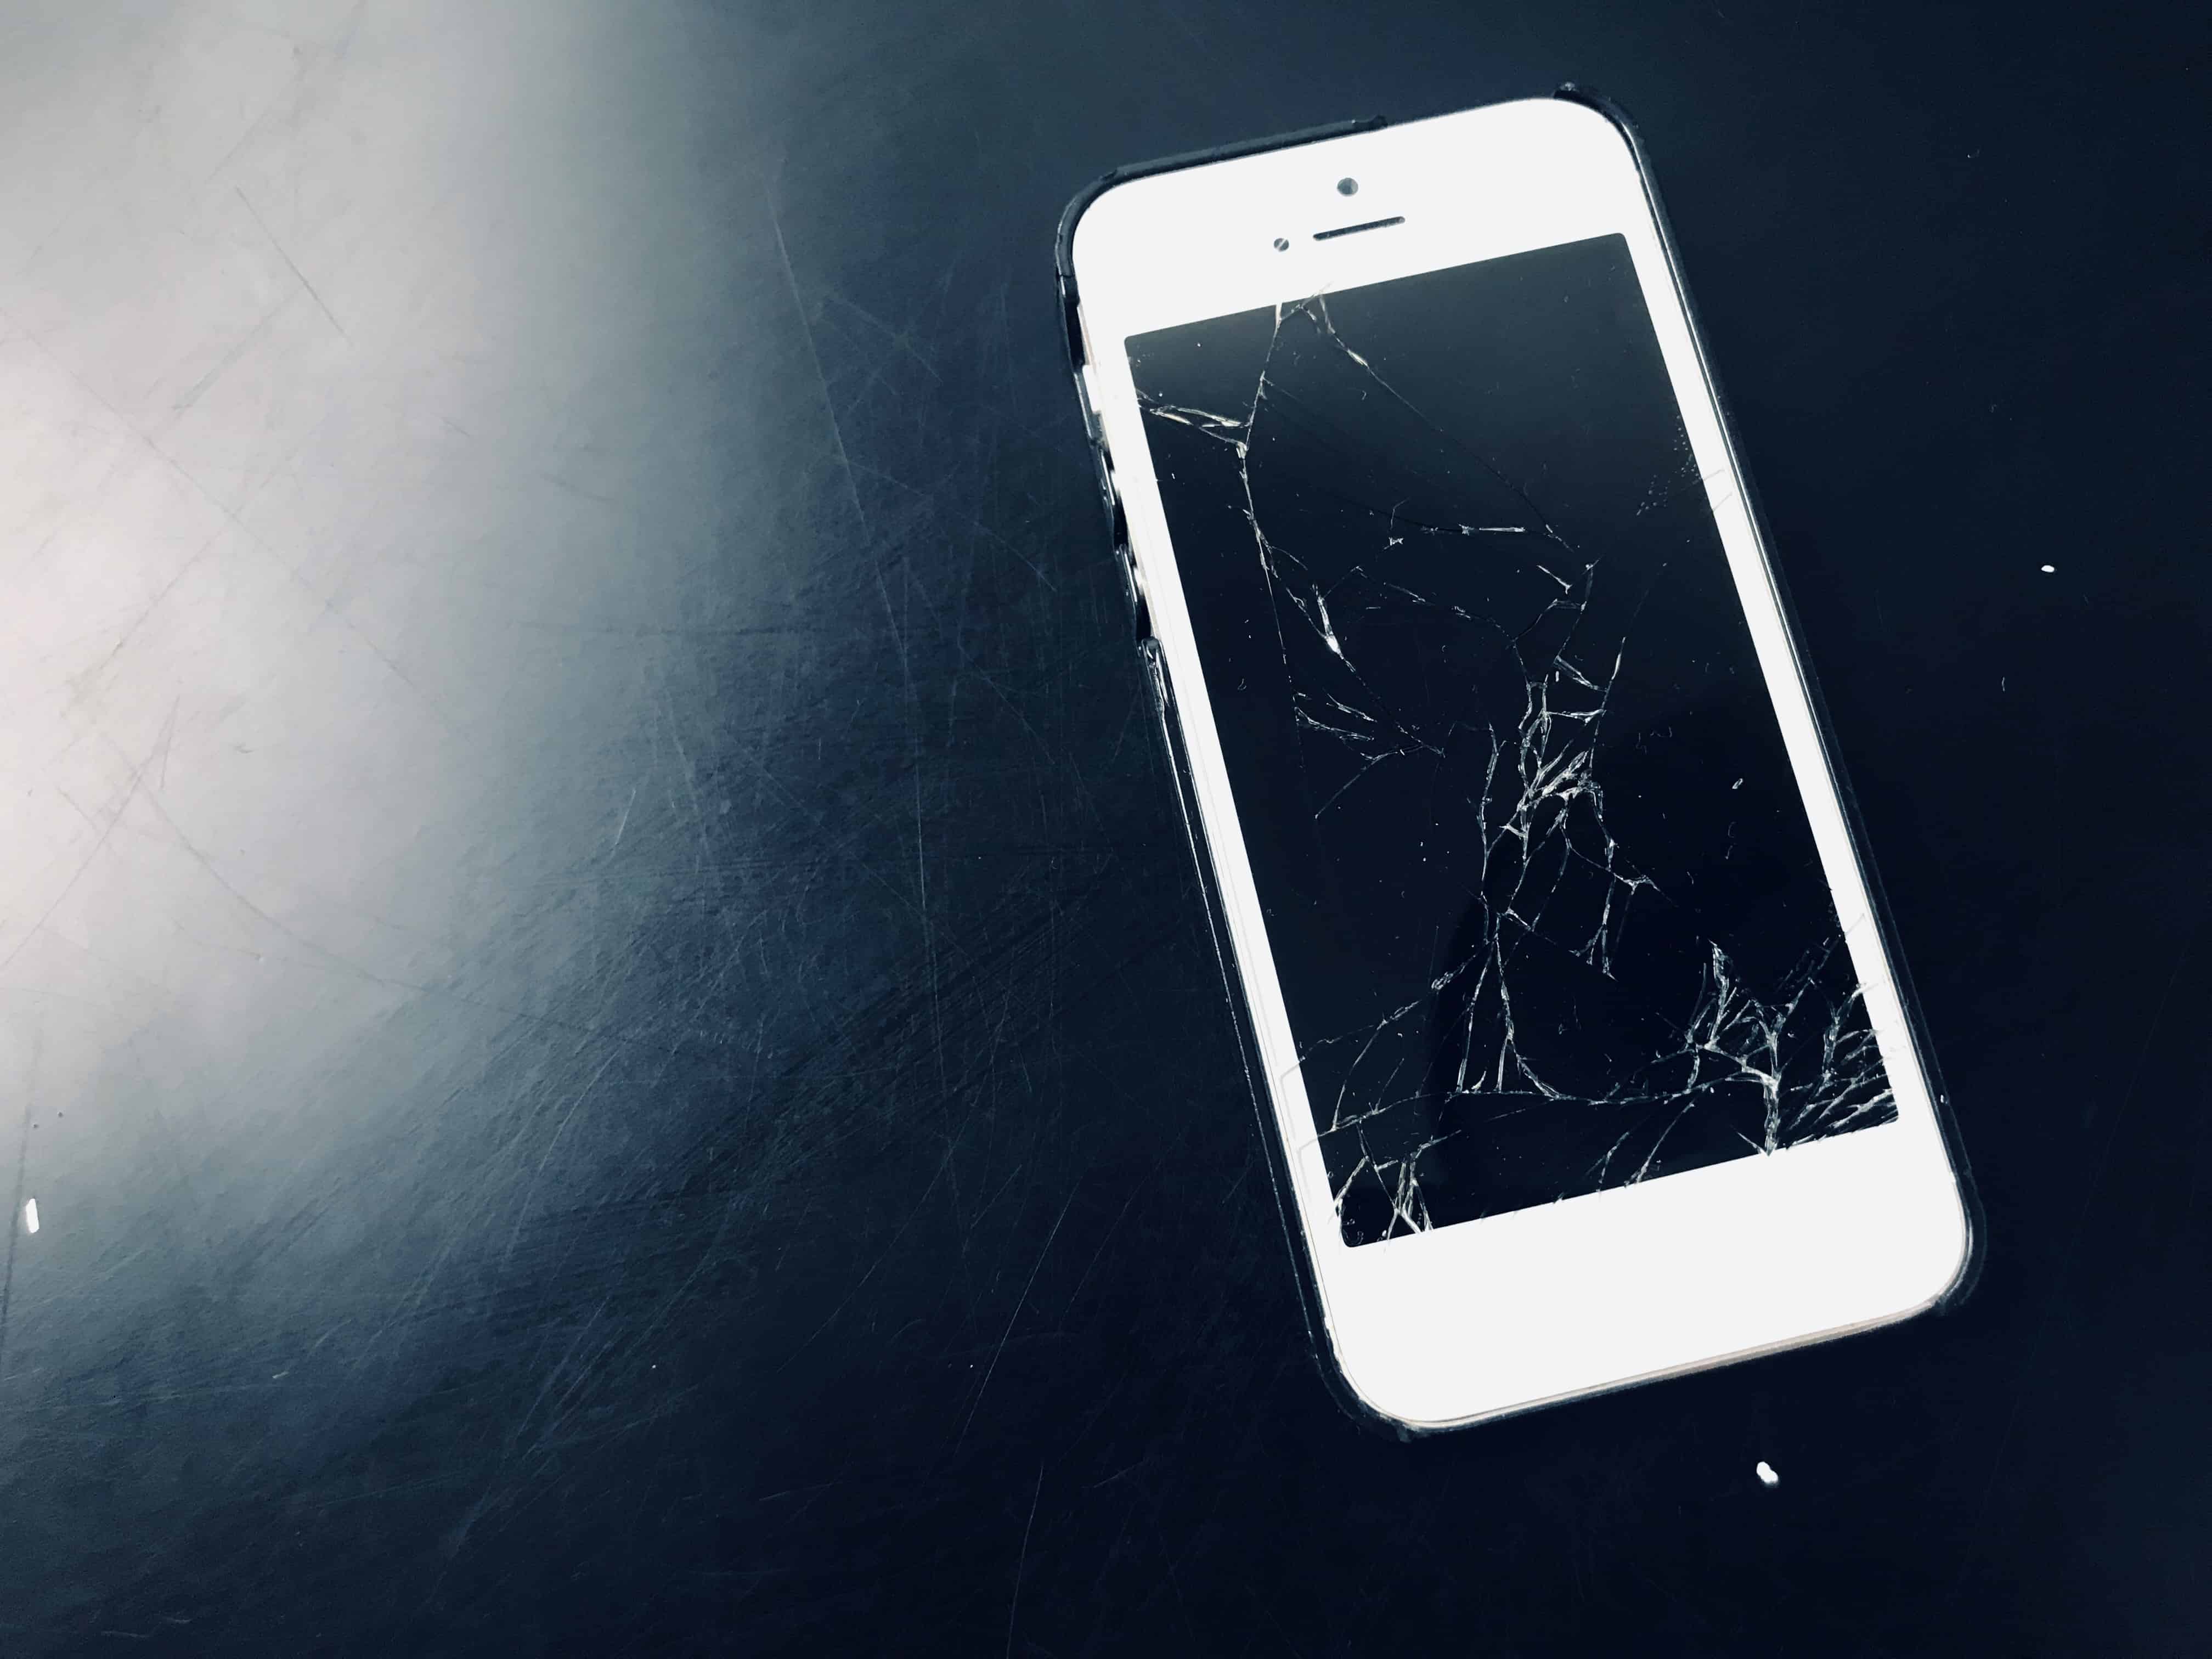 Your Iphone When The Screen Is Broken, How To Mirror Iphone Mac With Broken Screen